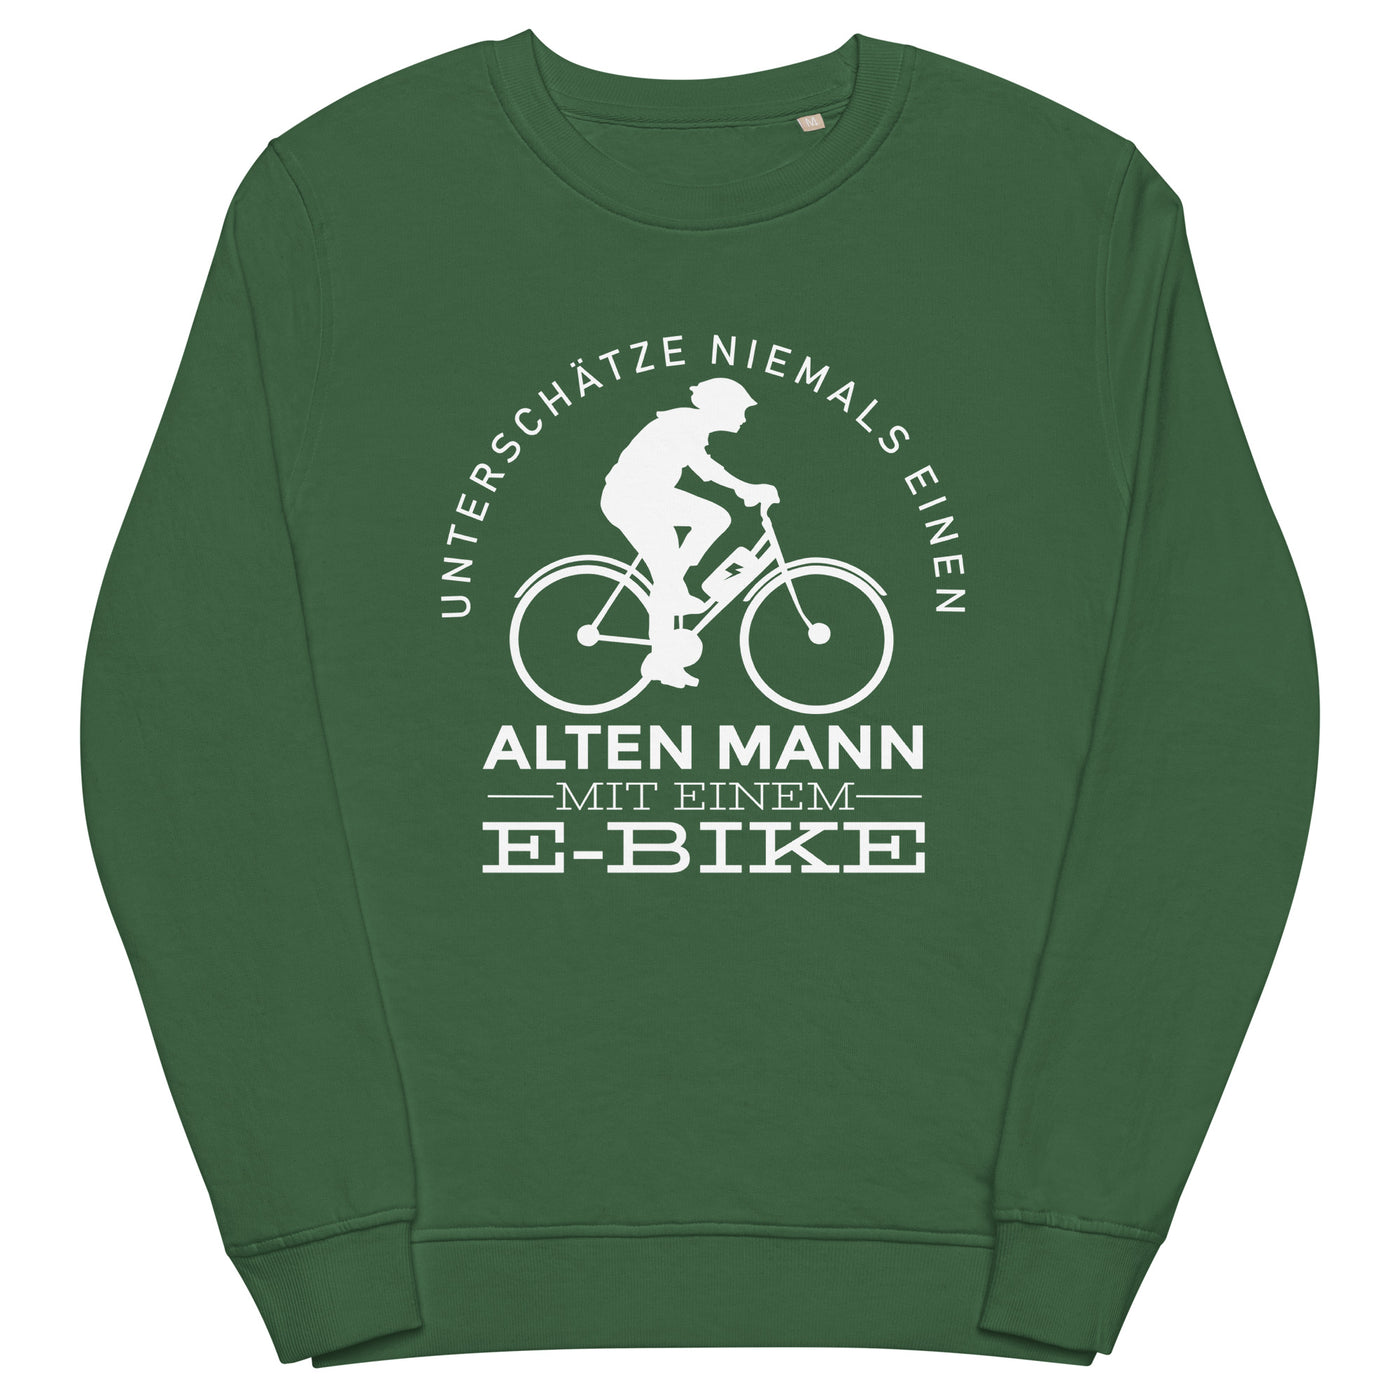 Alter Mann mit einem E-Bike - Unisex Premium Organic Sweatshirt e-bike Bottle Green